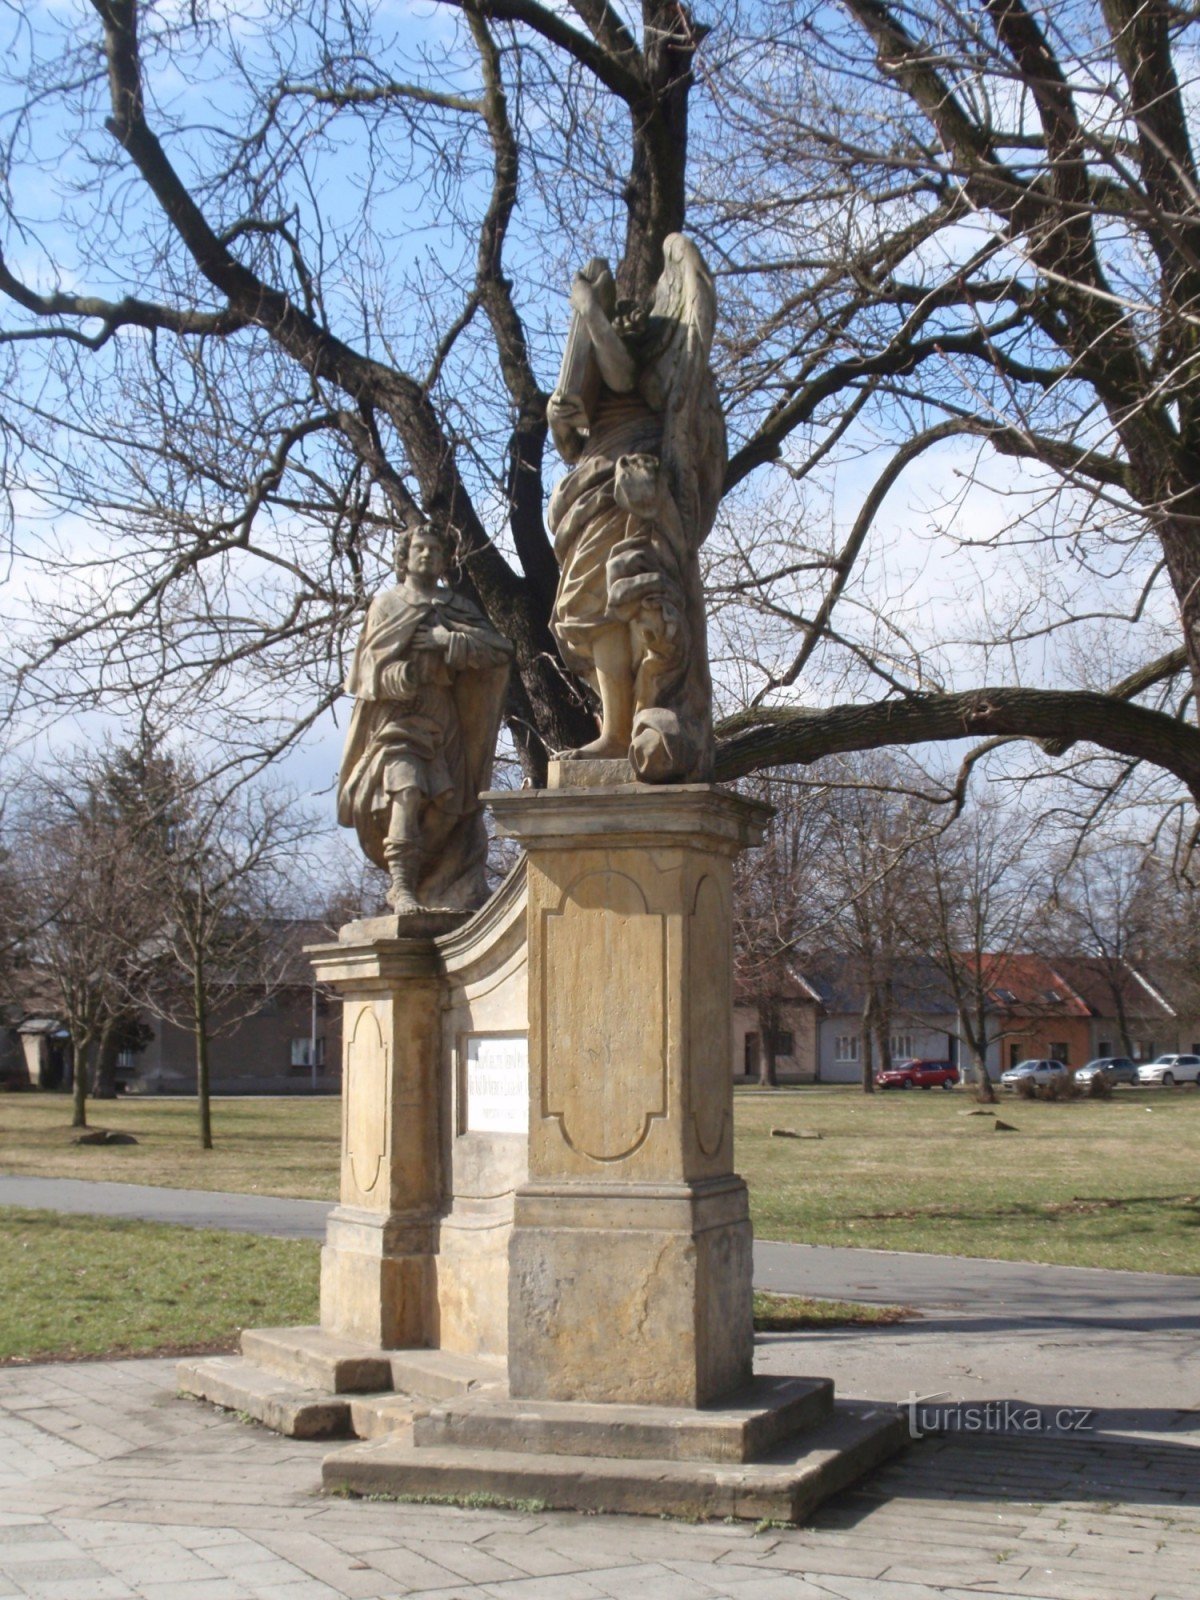 Olomouc-Chválkovice 与朝圣者的天使雕塑